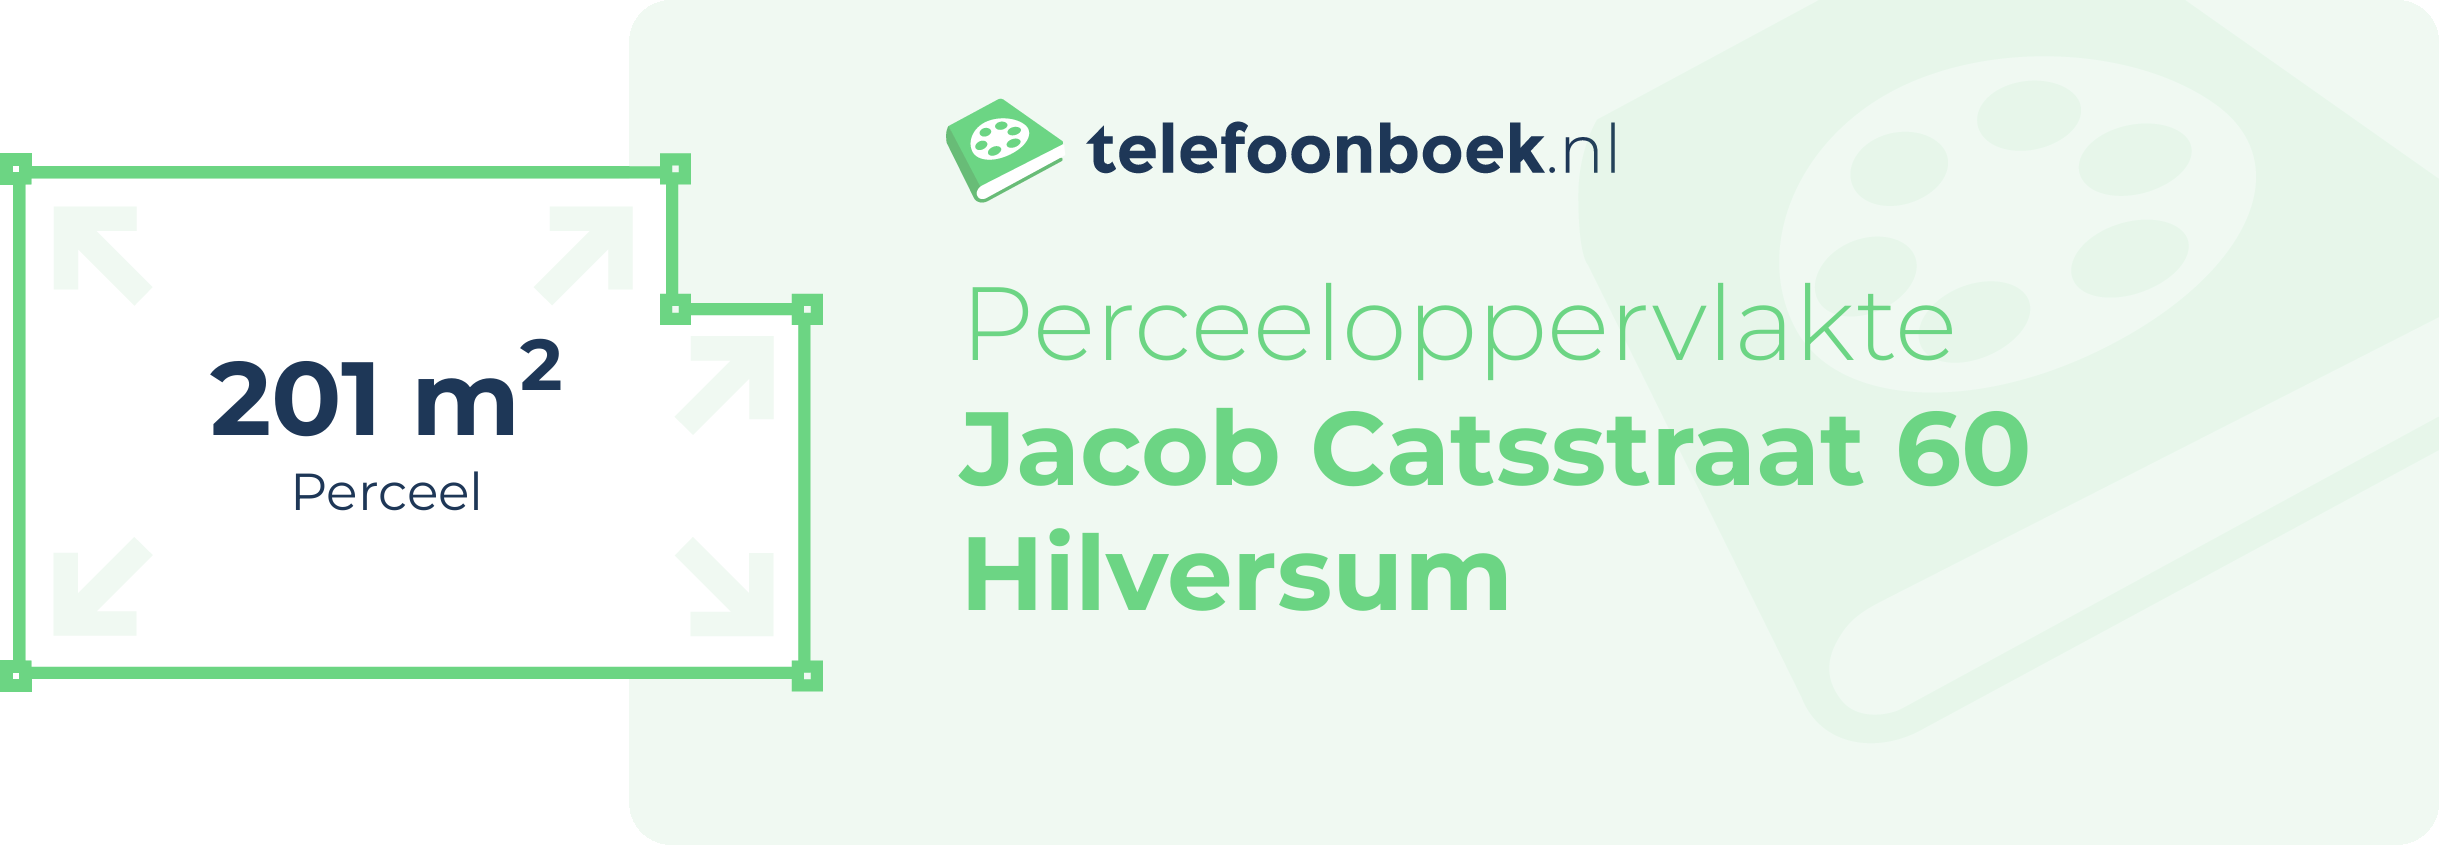 Perceeloppervlakte Jacob Catsstraat 60 Hilversum